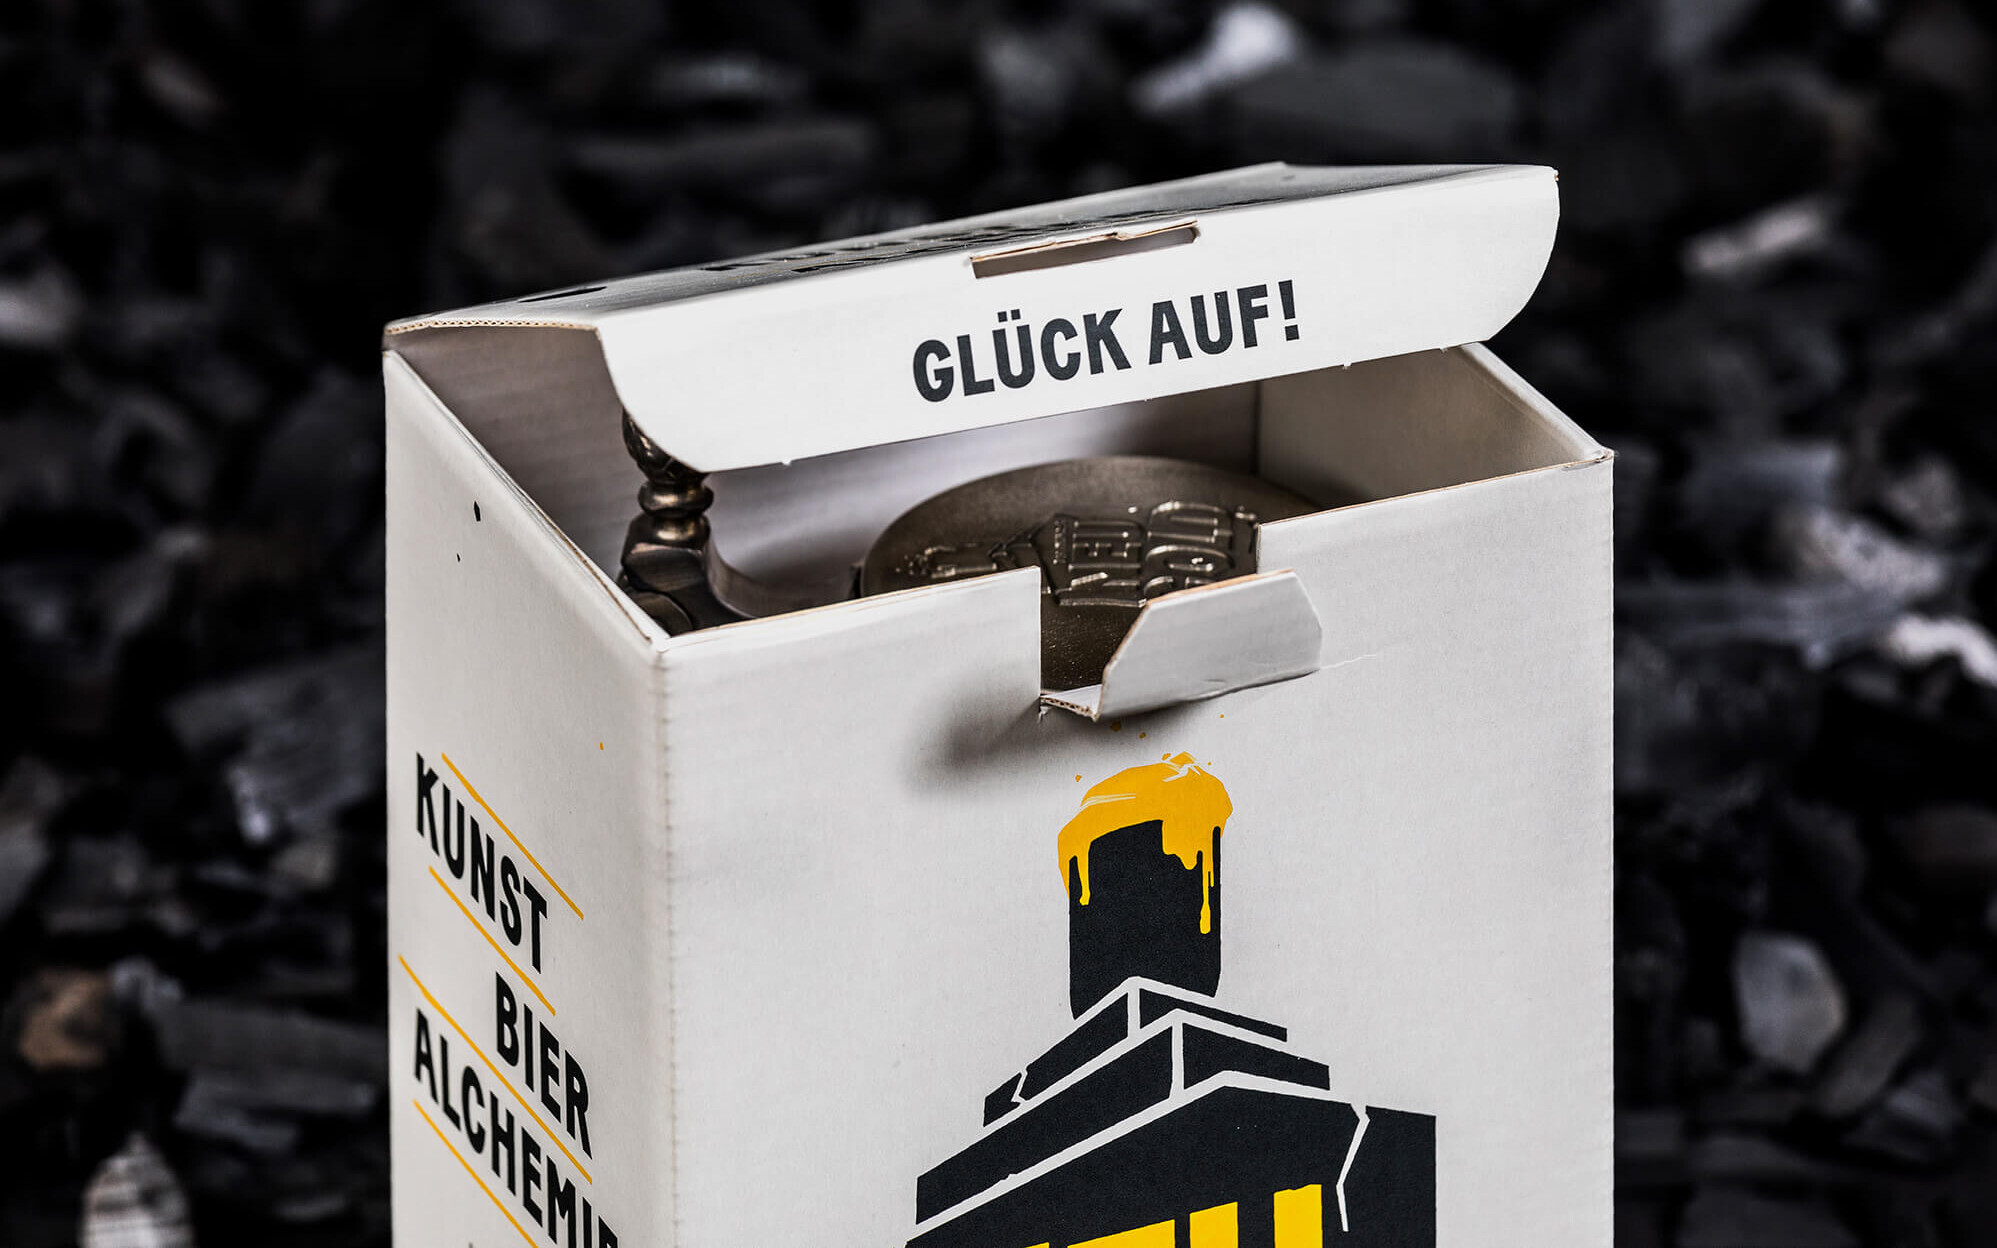 Detailaufnahme der Aufschrift „Glück auf!“ im Packaging für den Dortmunder Neugold Bierkrug